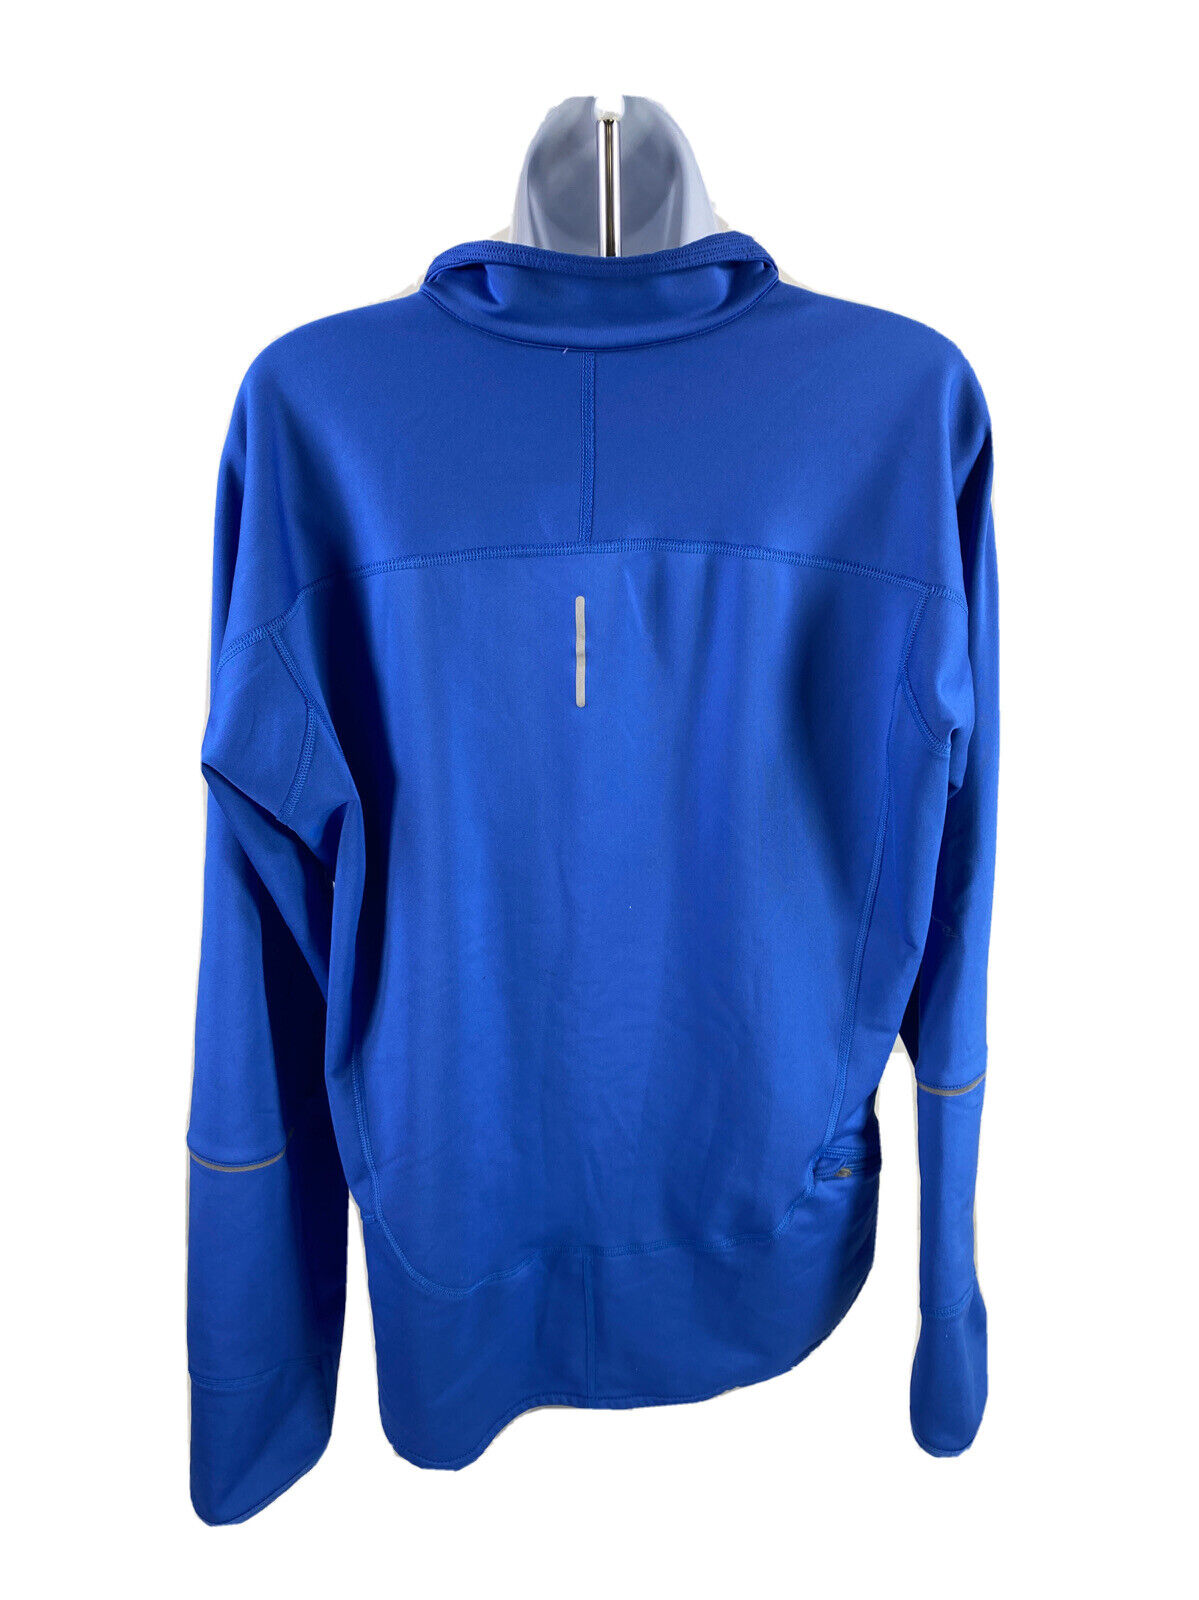 Nike Women's Blue Dri-Fit Fleece Lined Full Zip Athletic Jacket - XL